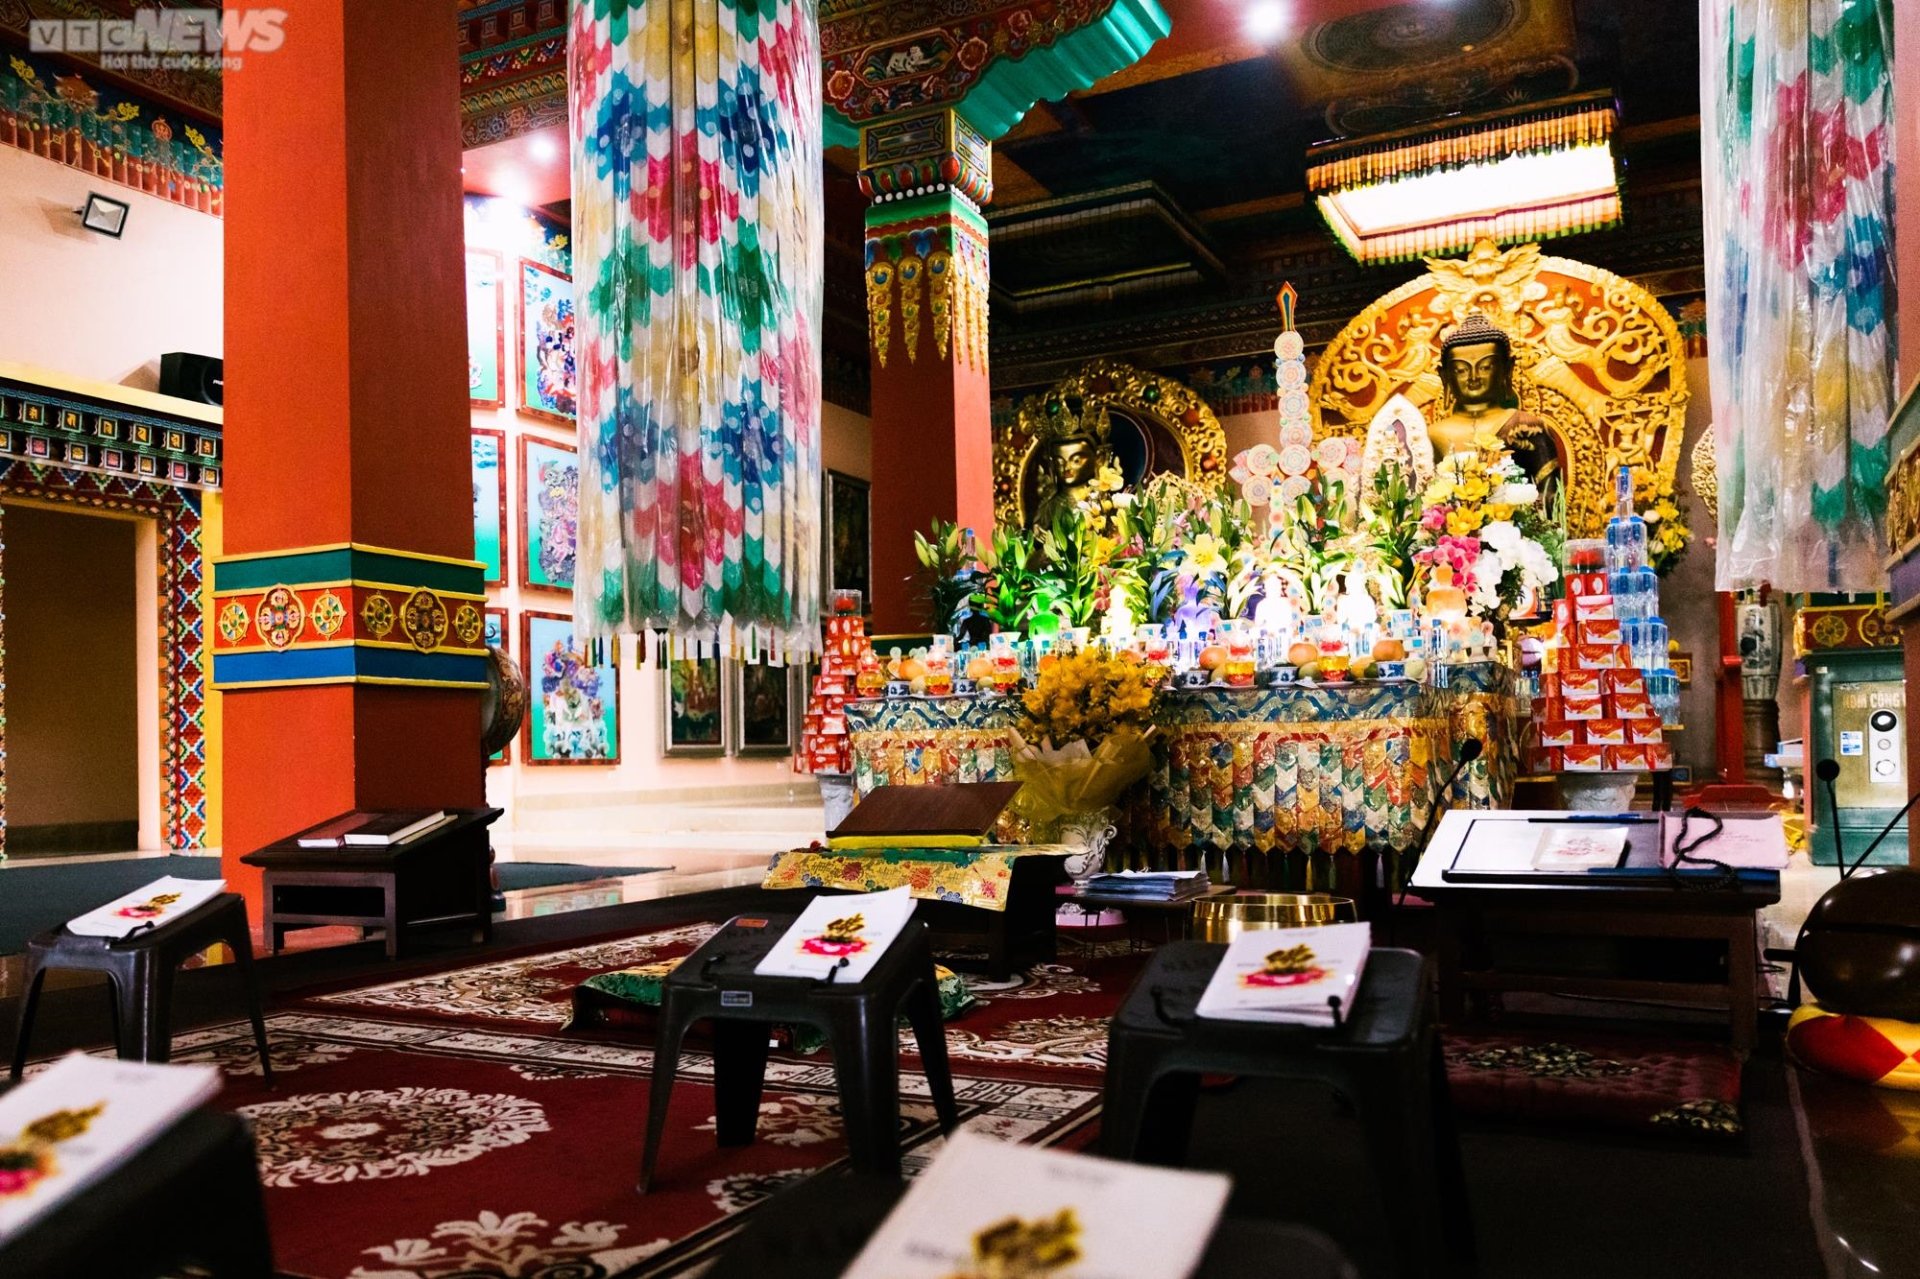 Chiêm ngưỡng ngôi chùa Tây Tạng 600 năm tuổi độc nhất tại Hà Nội - 11